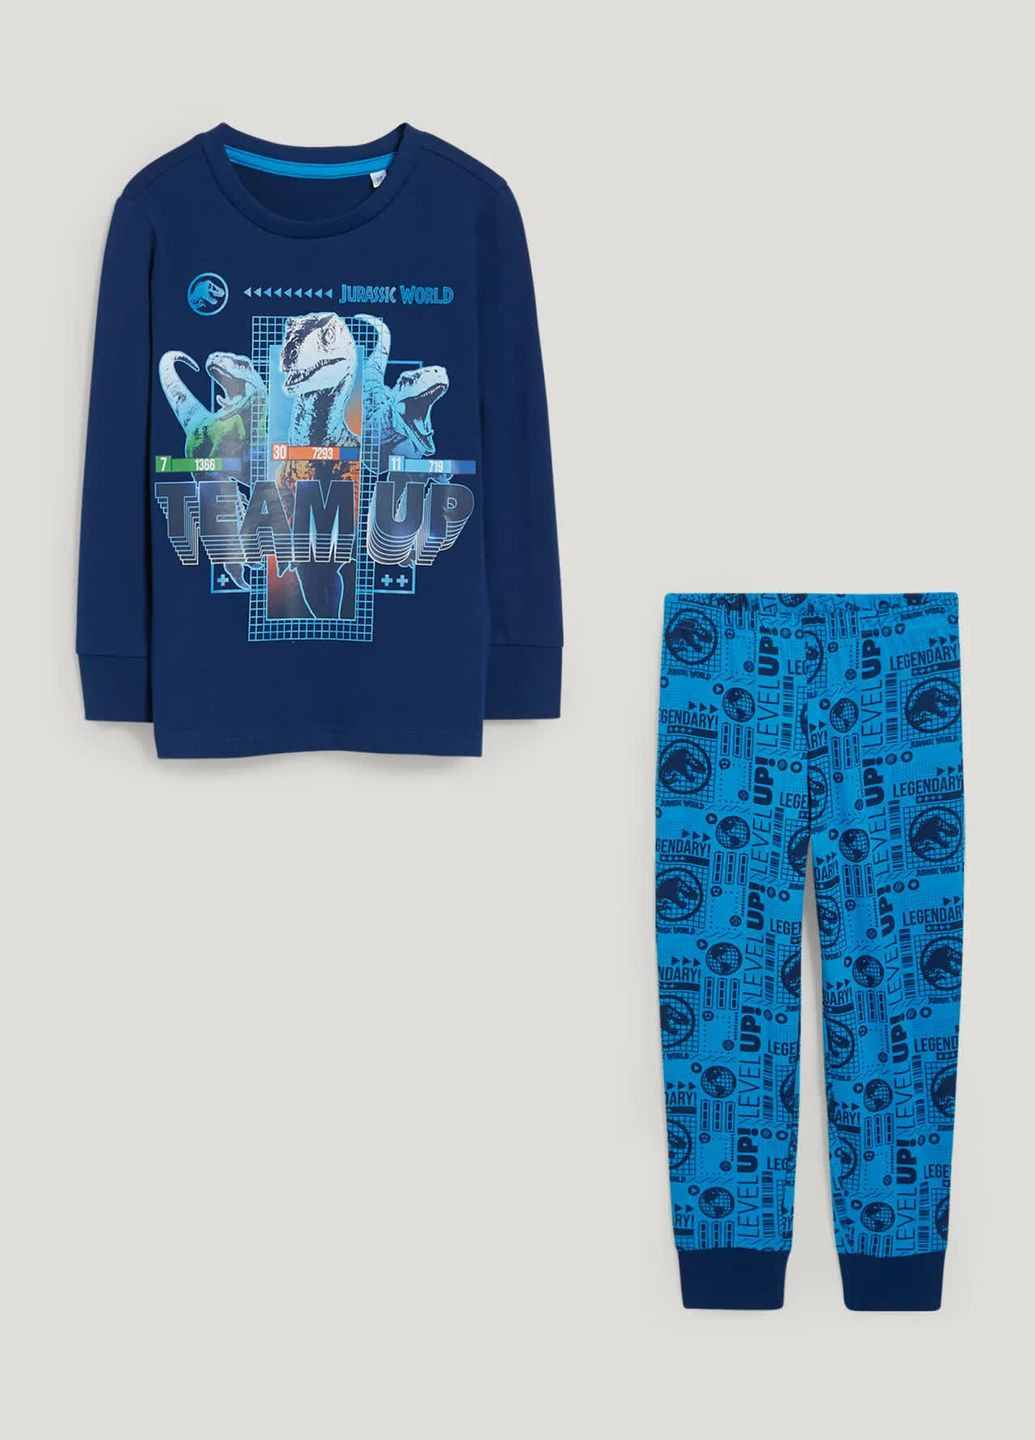 Синяя всесезон пижама (лонгслив, штаны) C&A